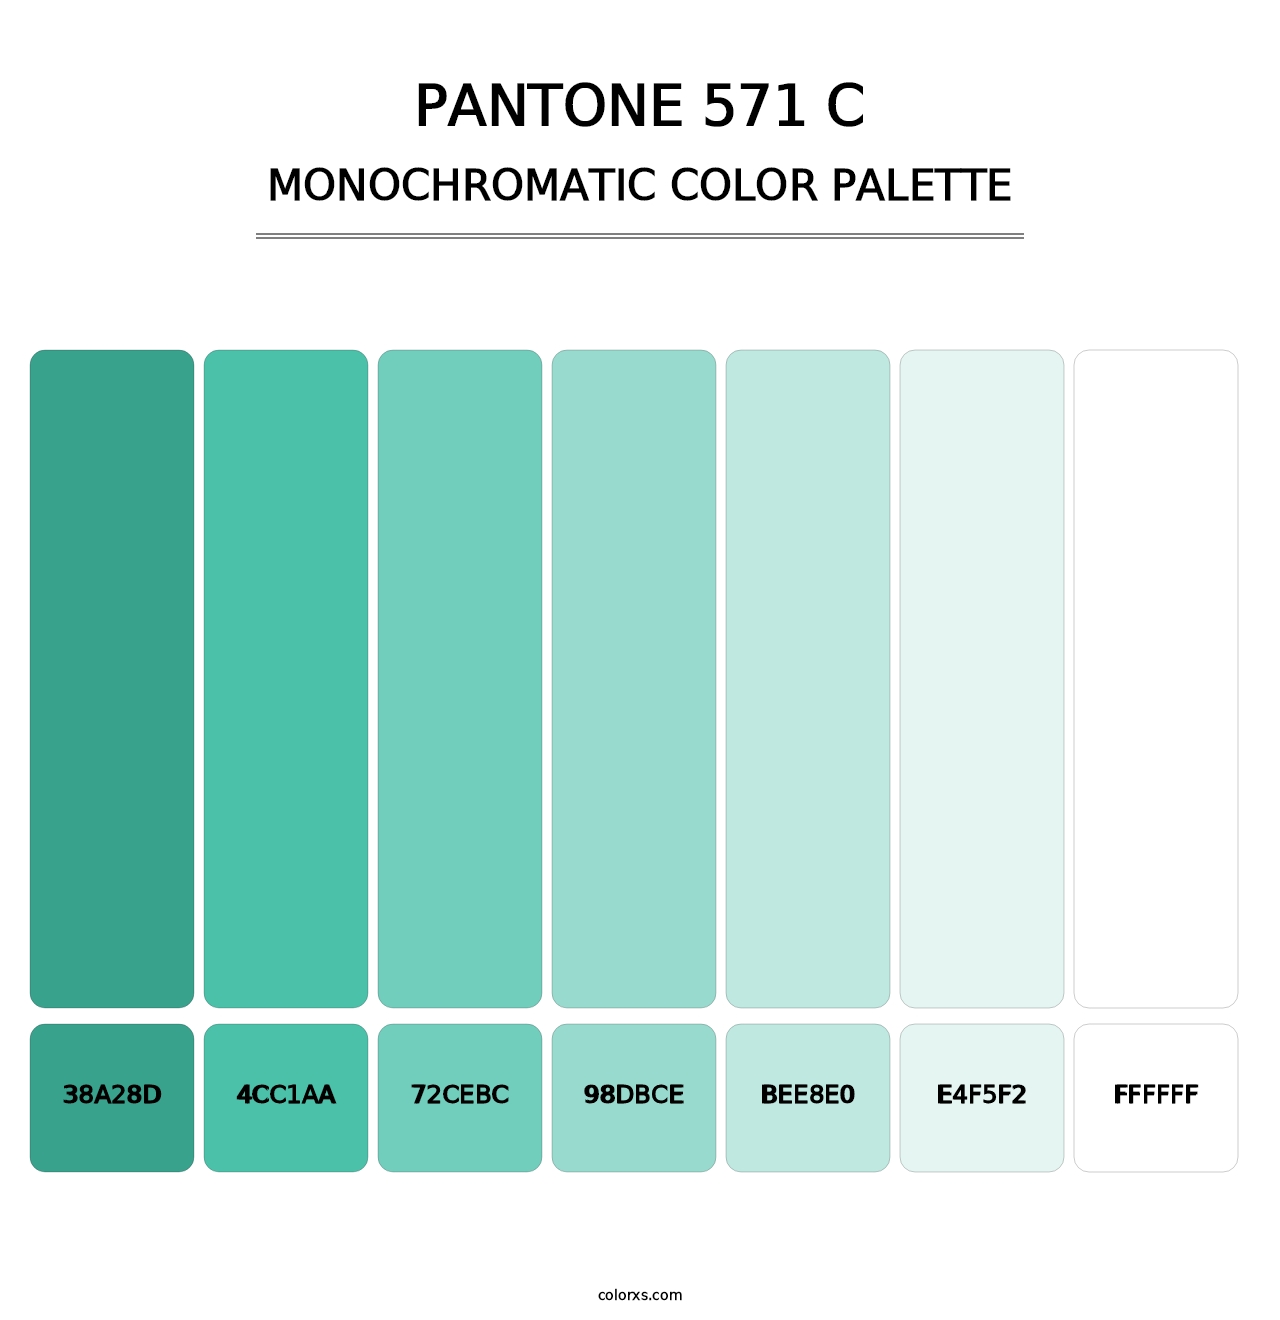 PANTONE 571 C - Monochromatic Color Palette